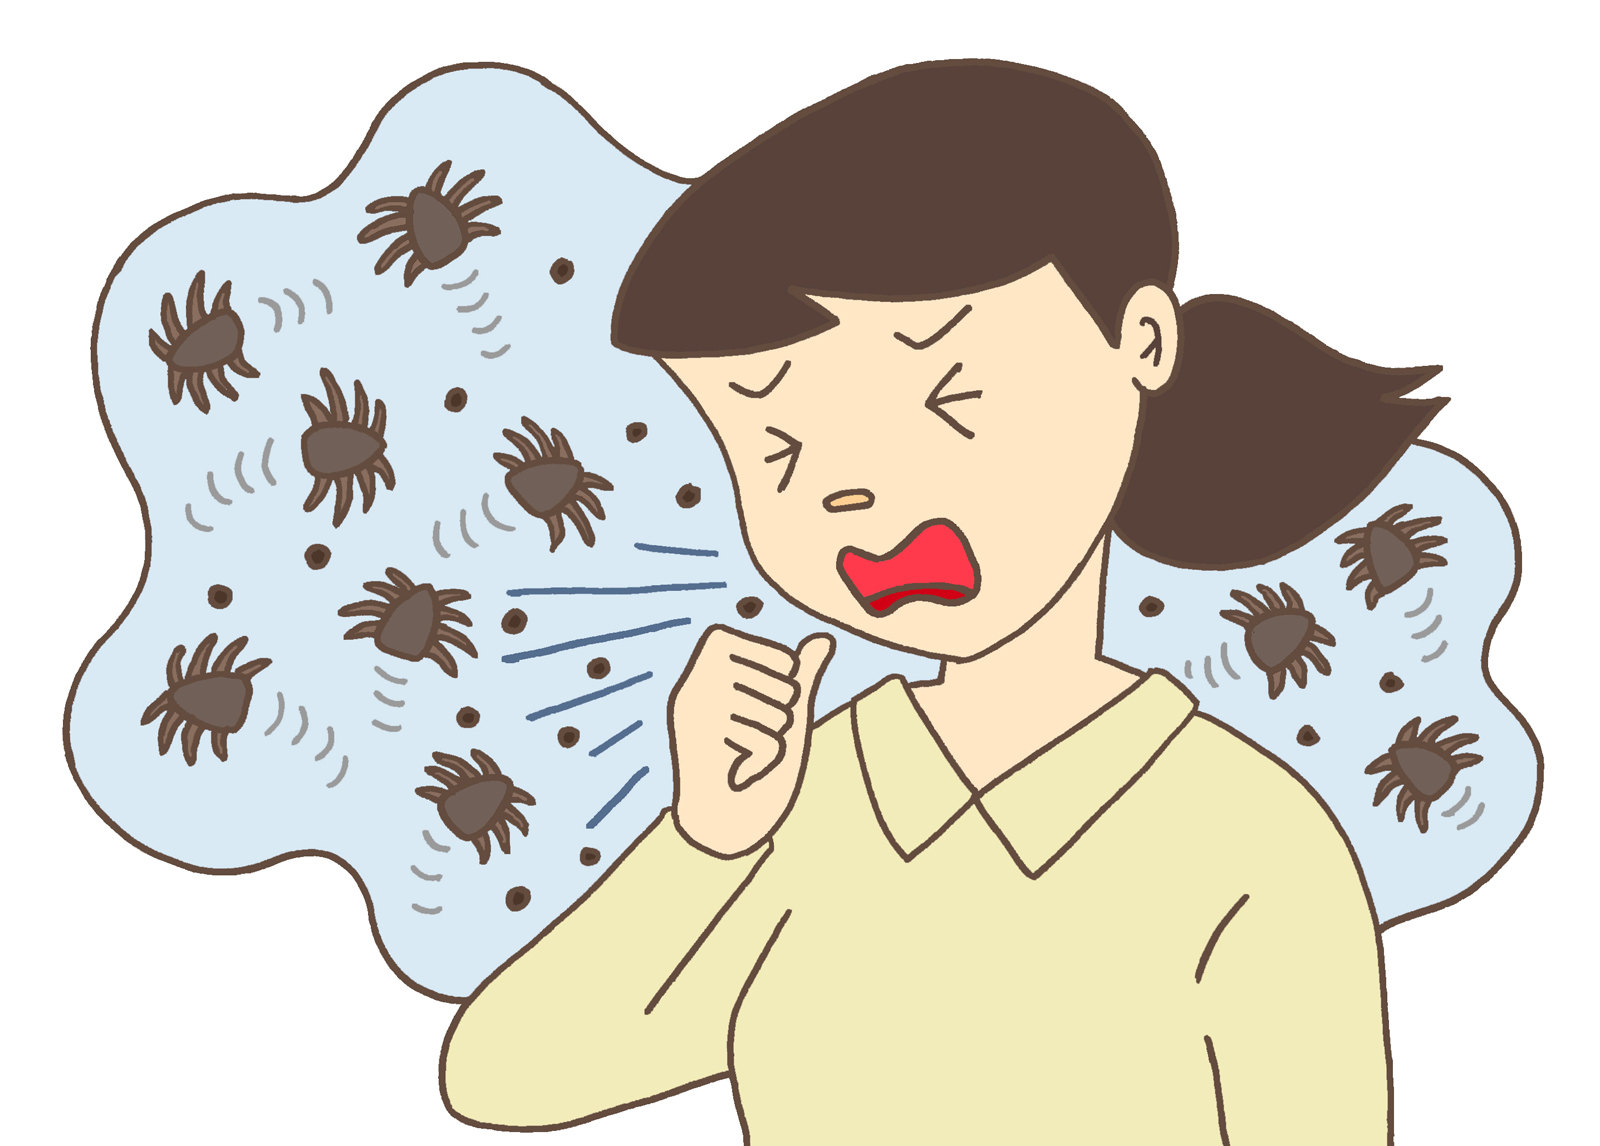 成人喘息において、発作初期に吸入ステロイド薬を増量すると悪化が防げるか？